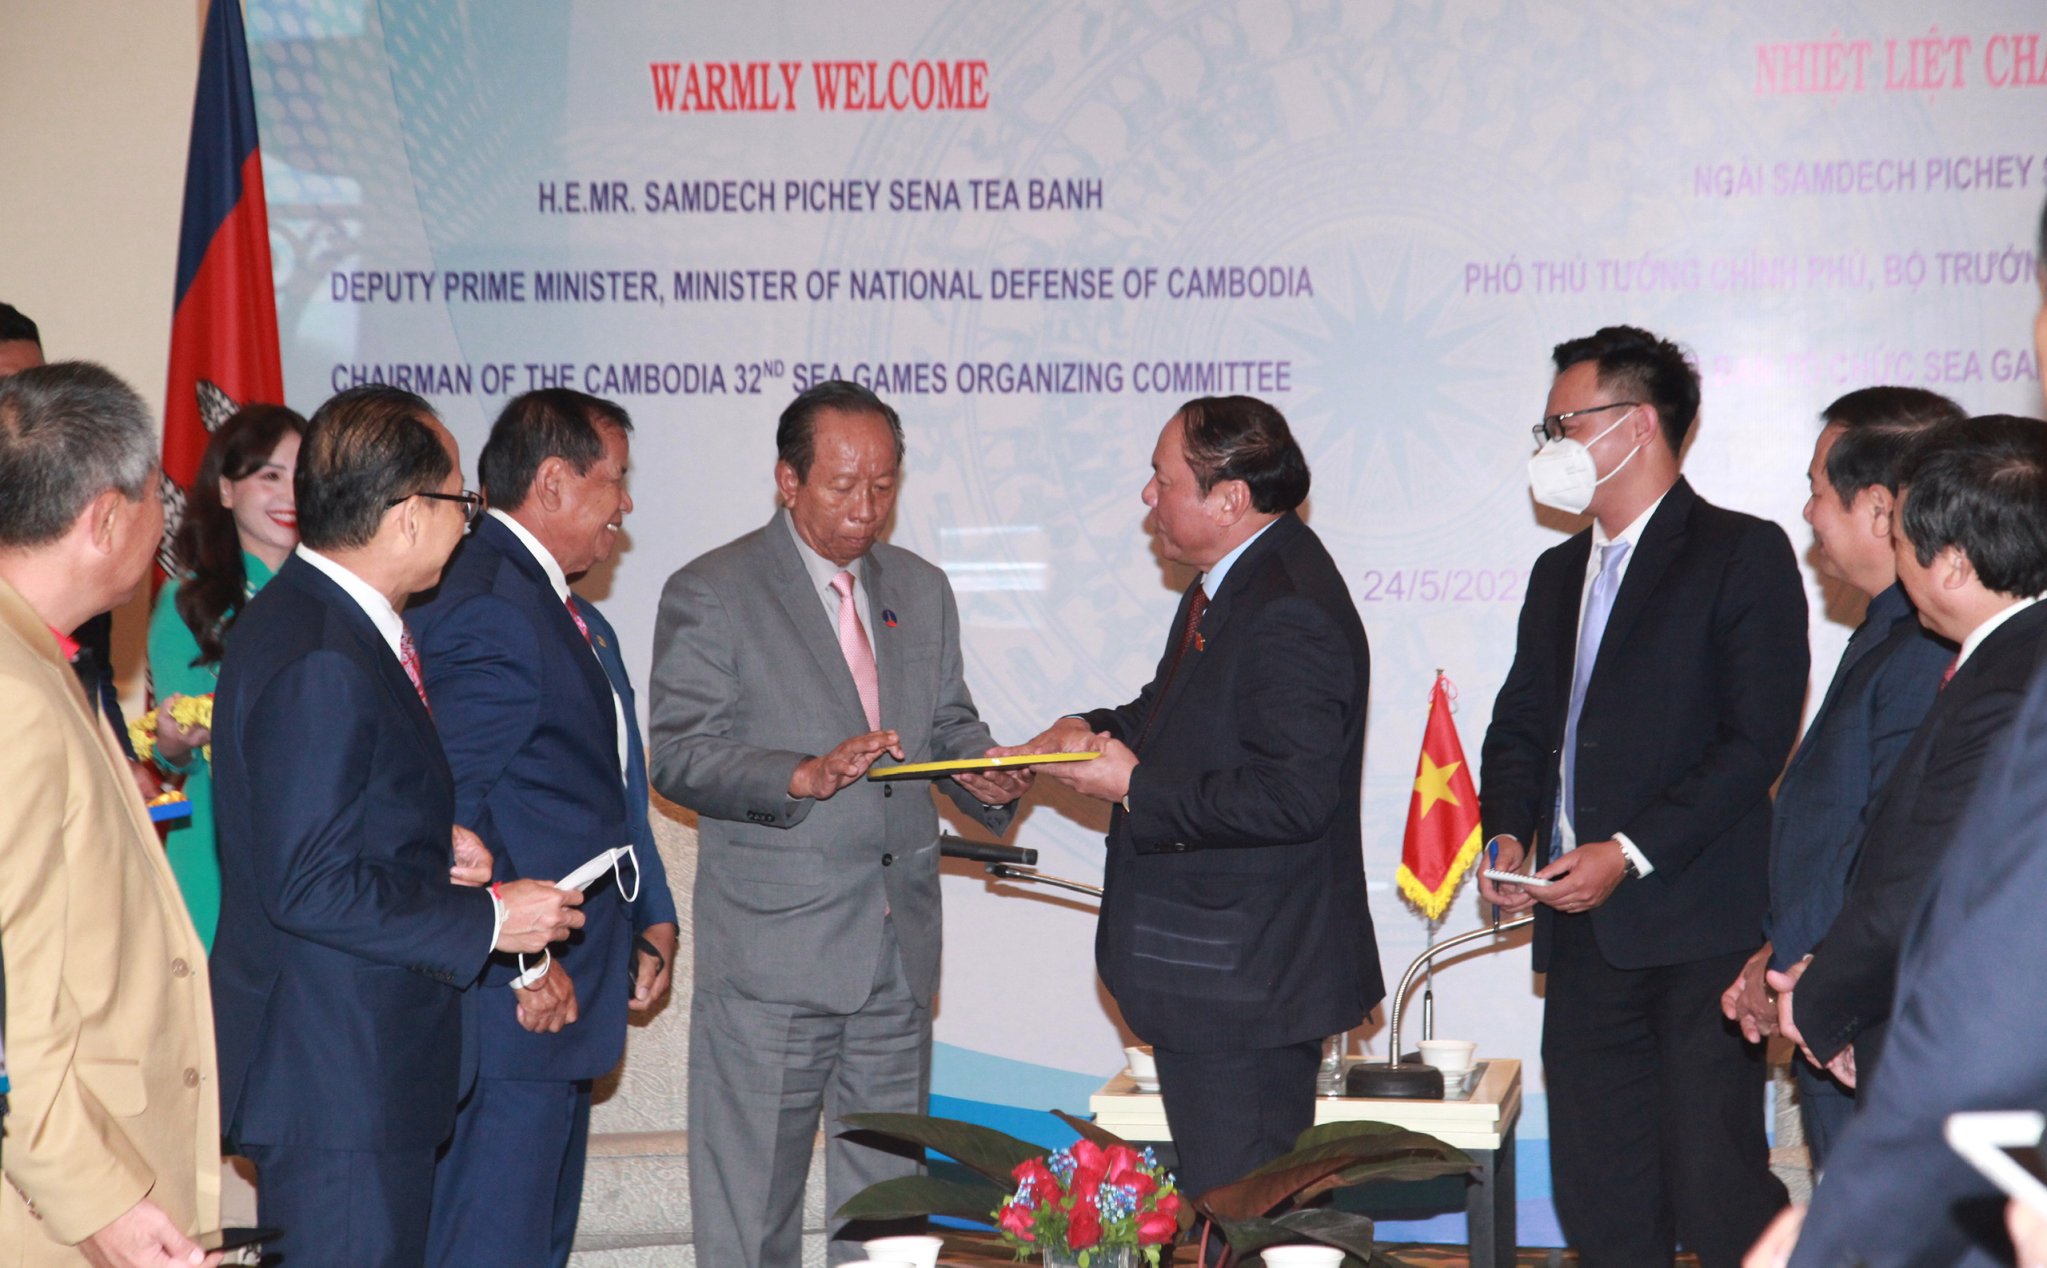 Bộ trưởng Bộ VHTTDL Nguyễn Văn Hùng tặng quà cho Phó Thủ tướng Chính phủ Campuchia, ngài Samdech Pichey Sena Tea Banh